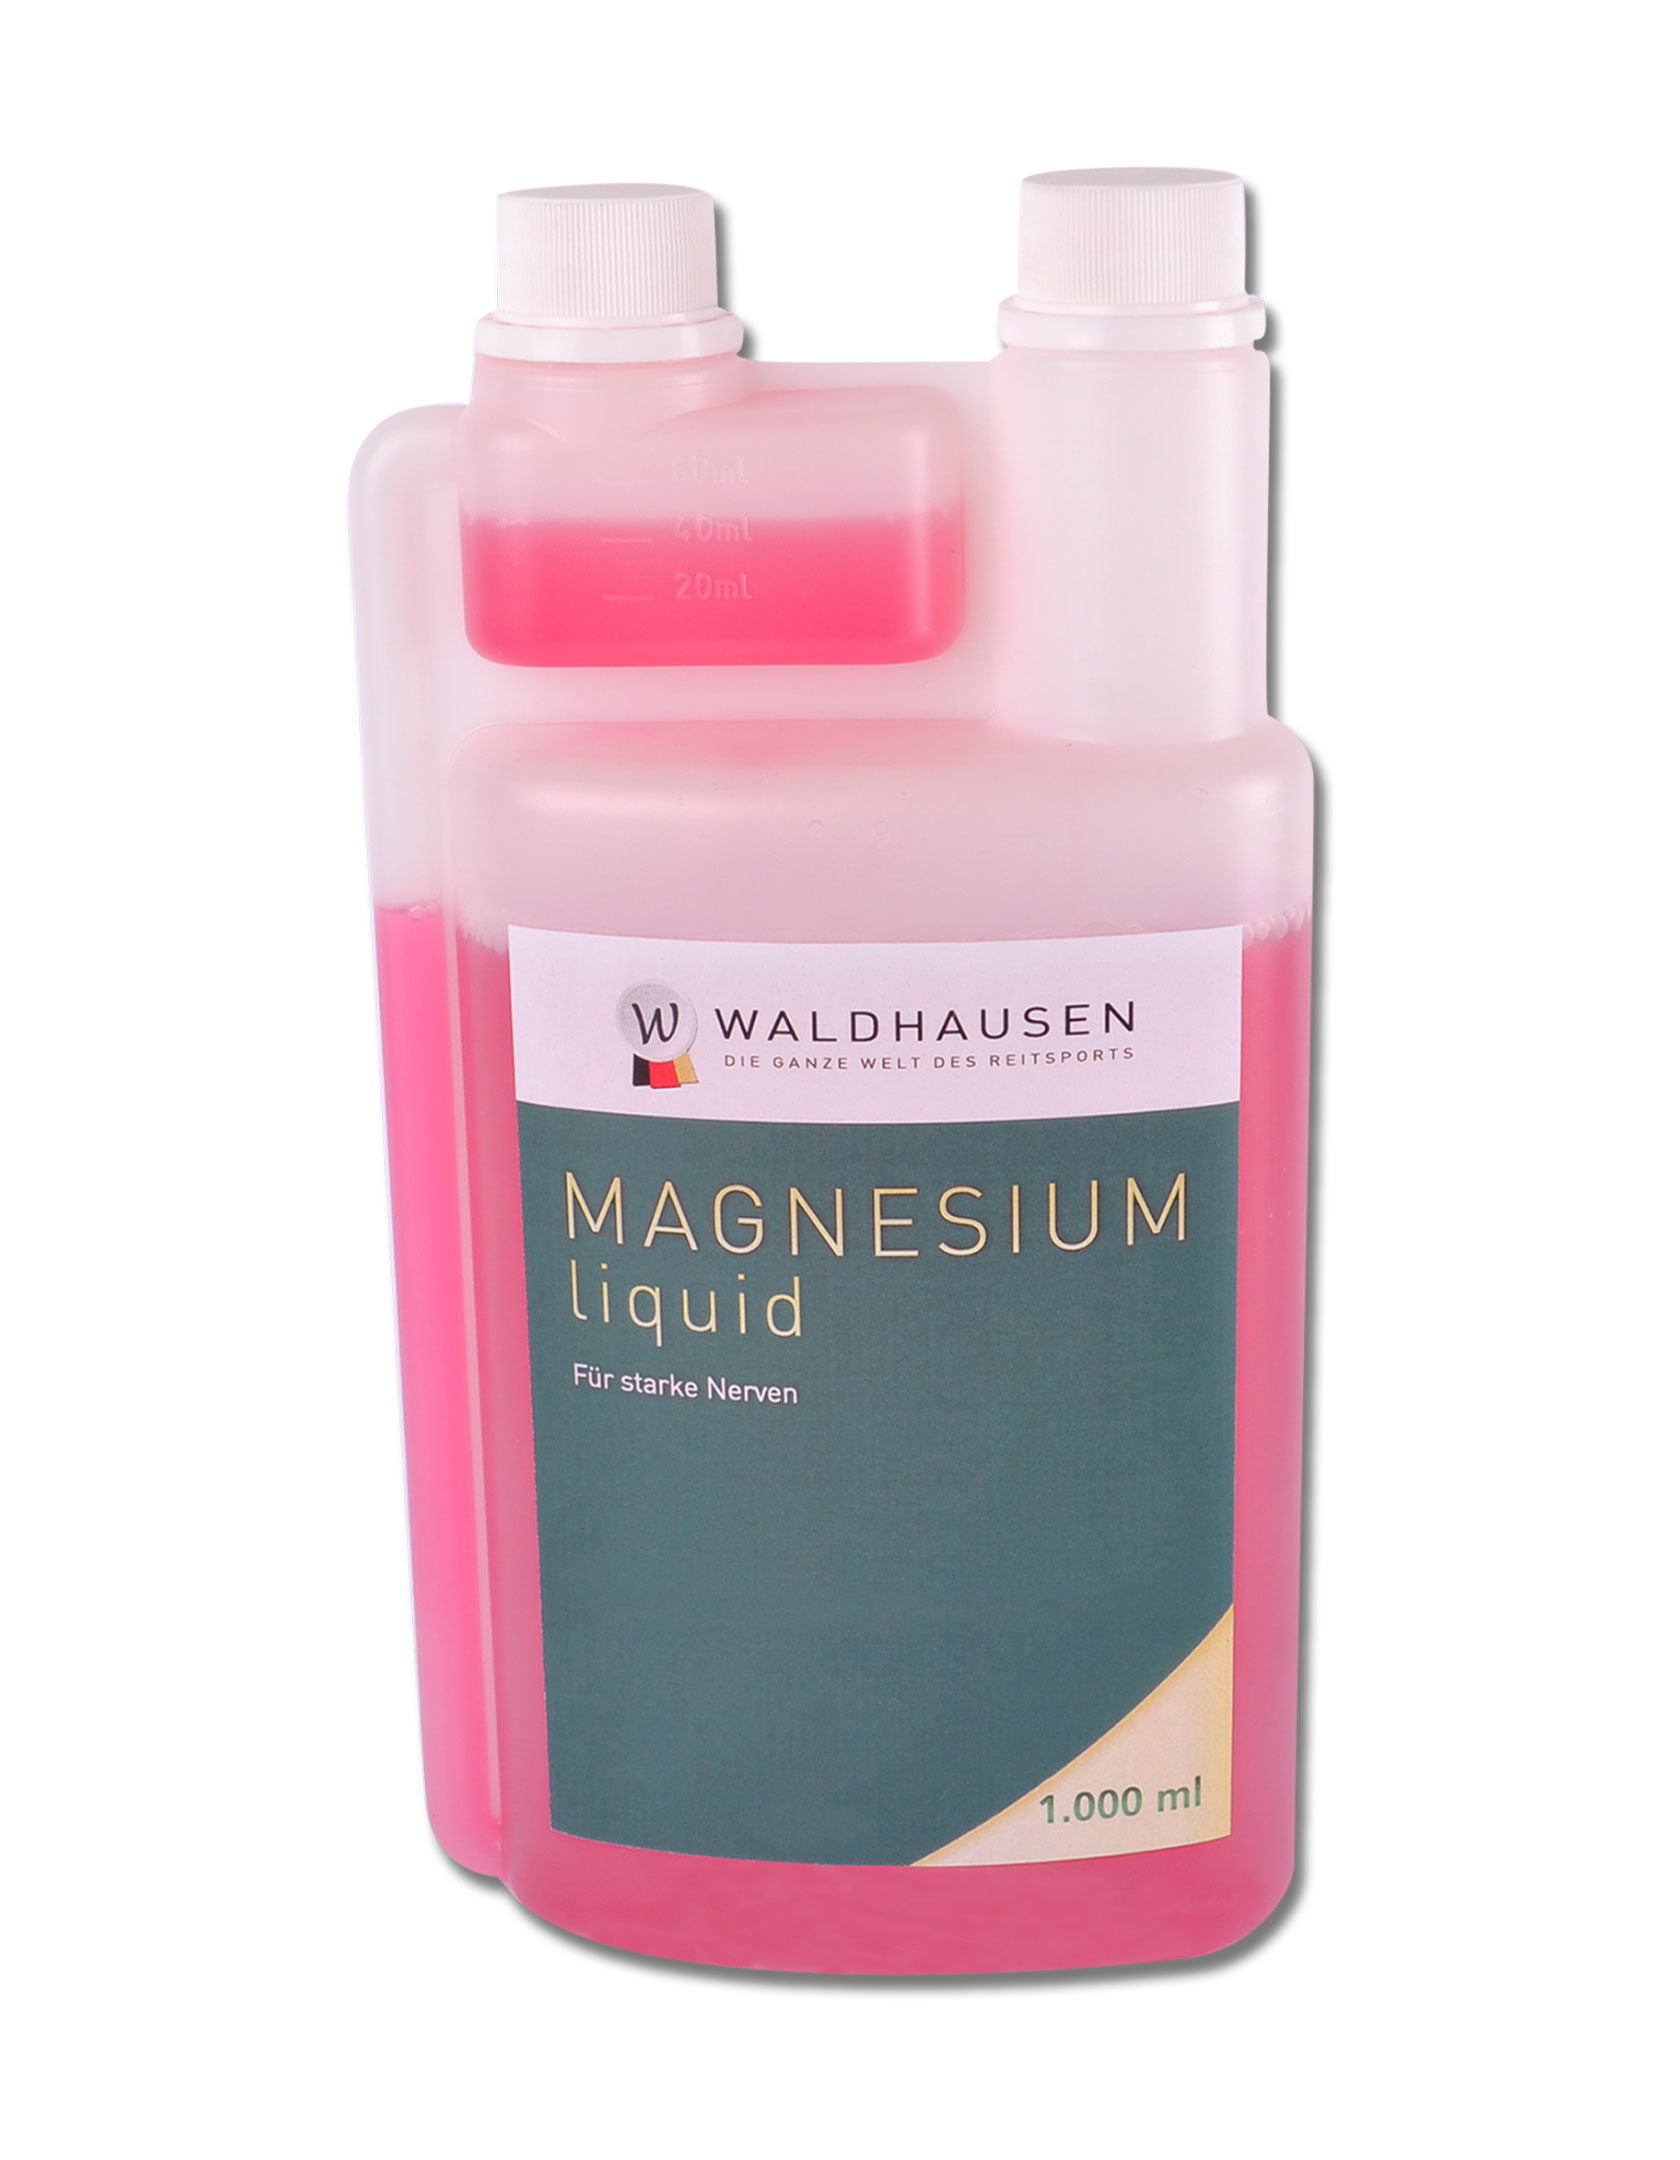 WALDHAUSEN Magnesium liquid - für starke Nerven